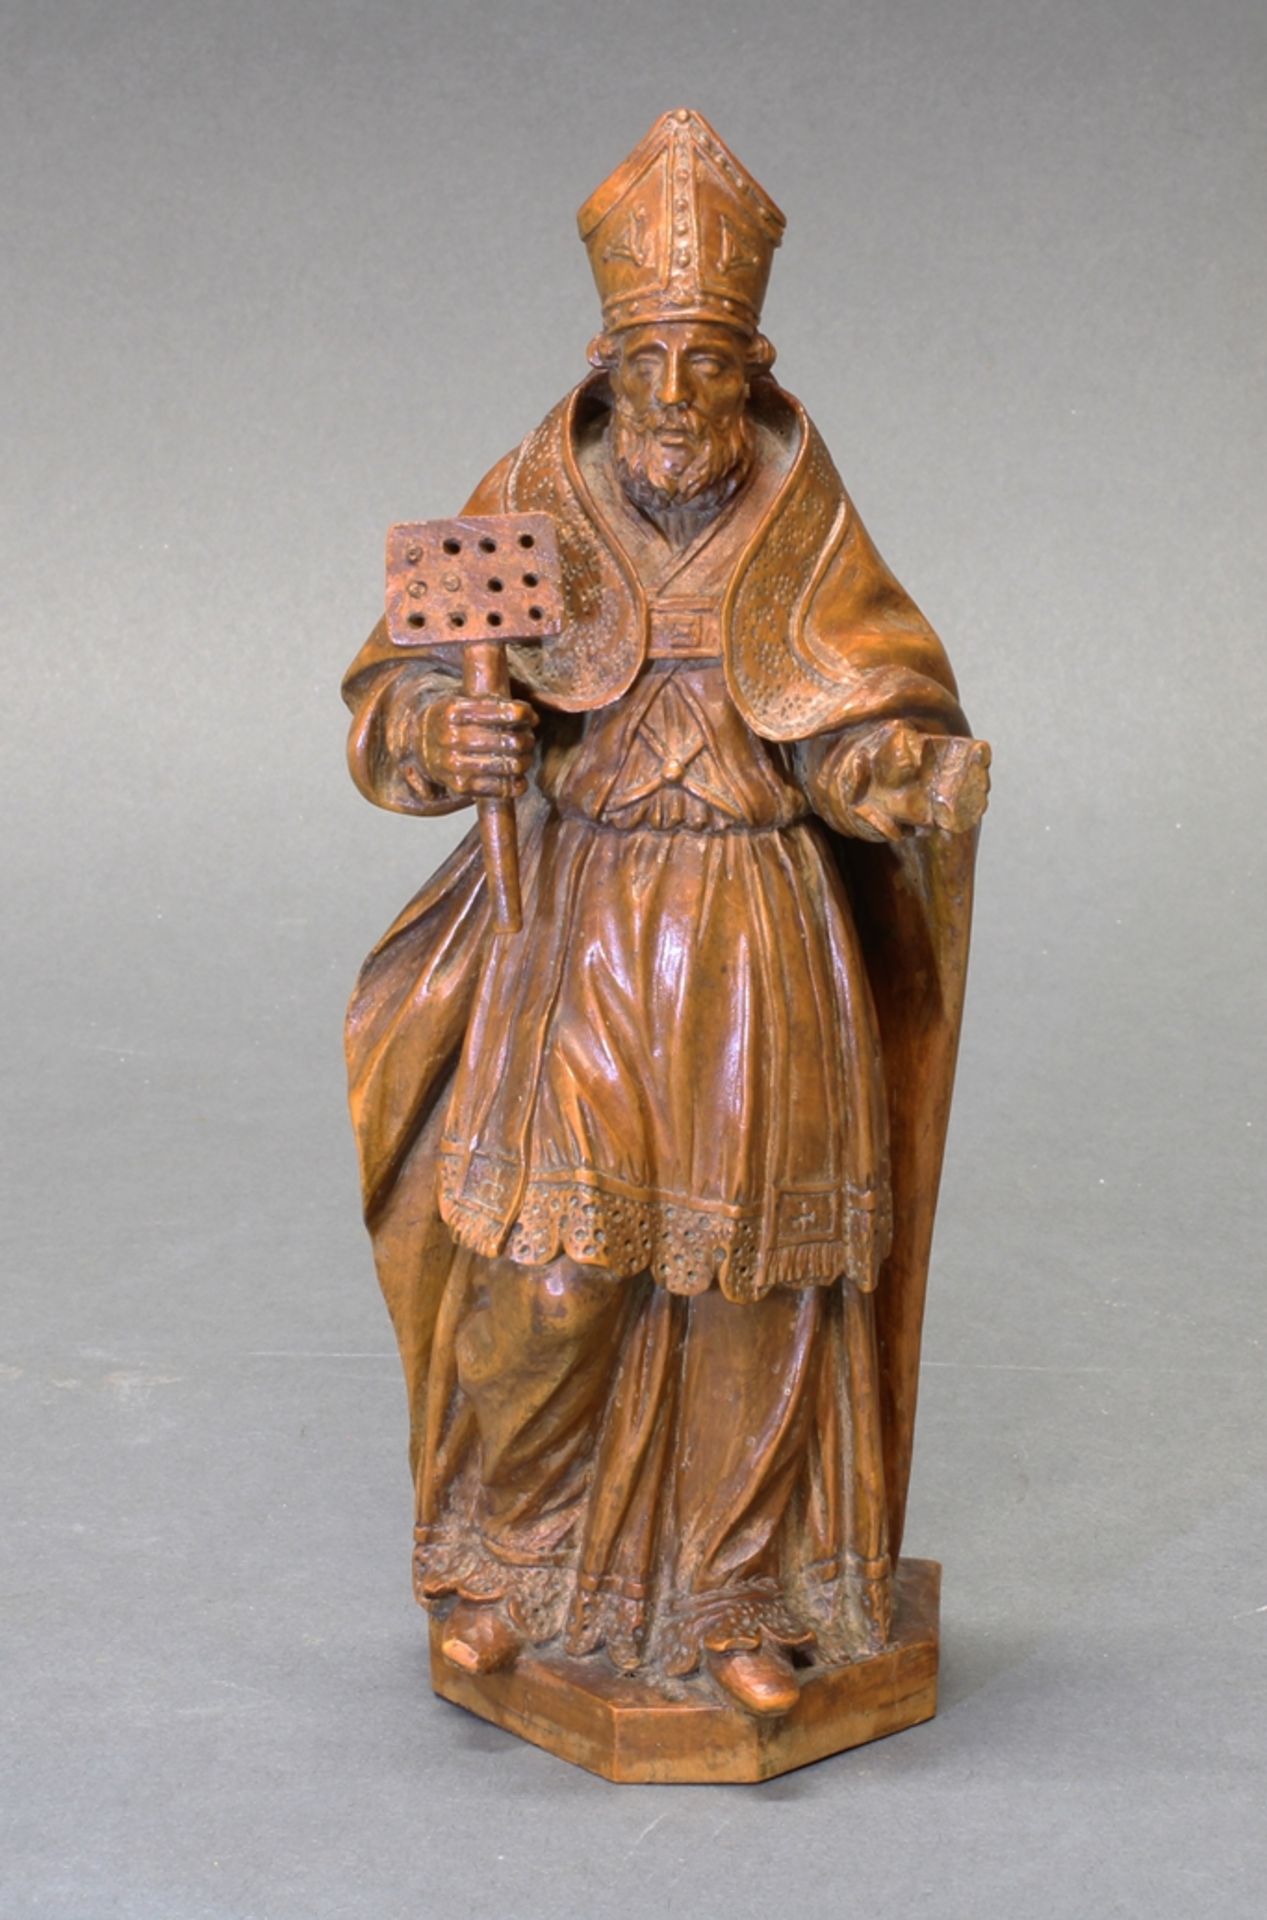 Skulptur, Buchsbaumholz geschnitzt, "Bischof", 18. Jh., 20 cm hoch, Fehlstellen an der Mitra und de